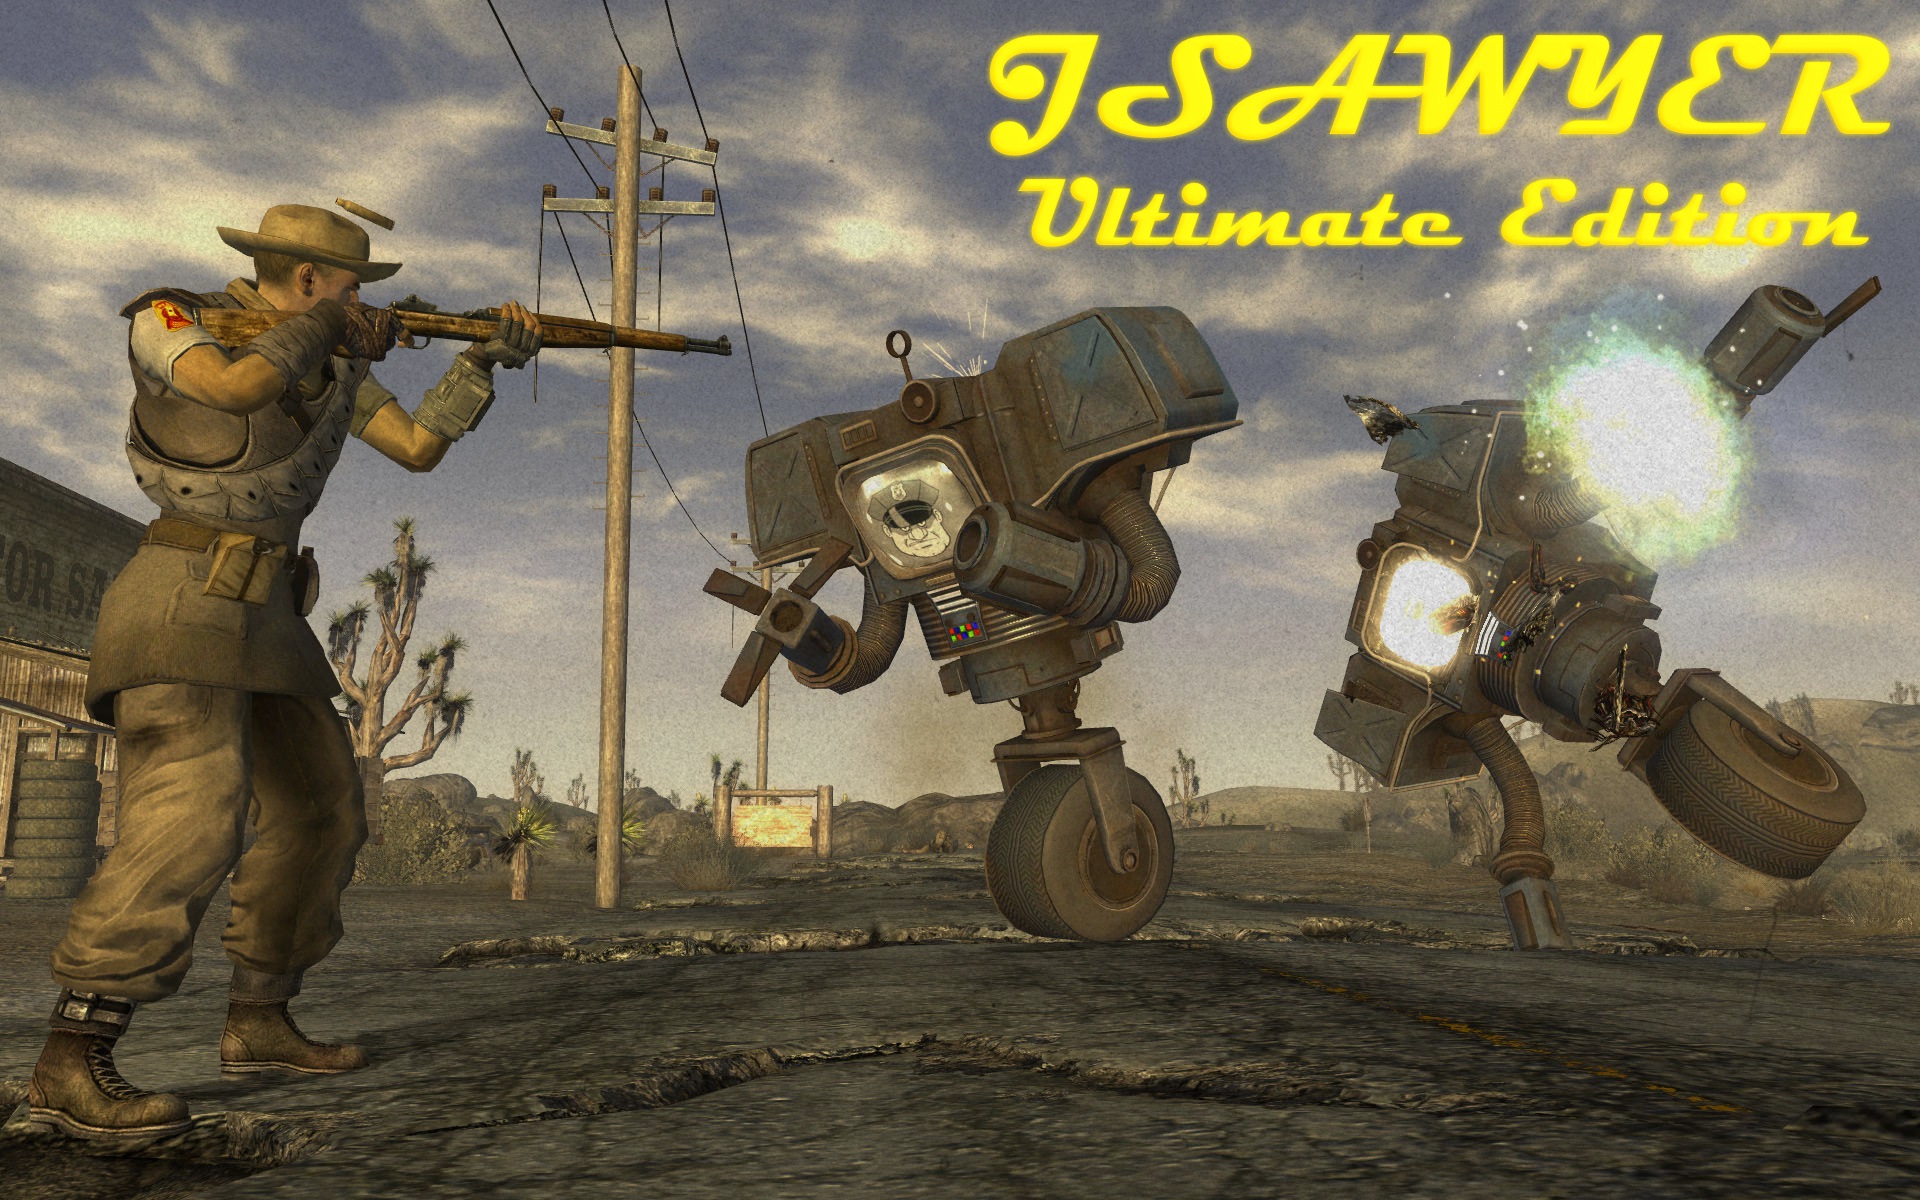 Fallout: New Vegas's JSawyer mod